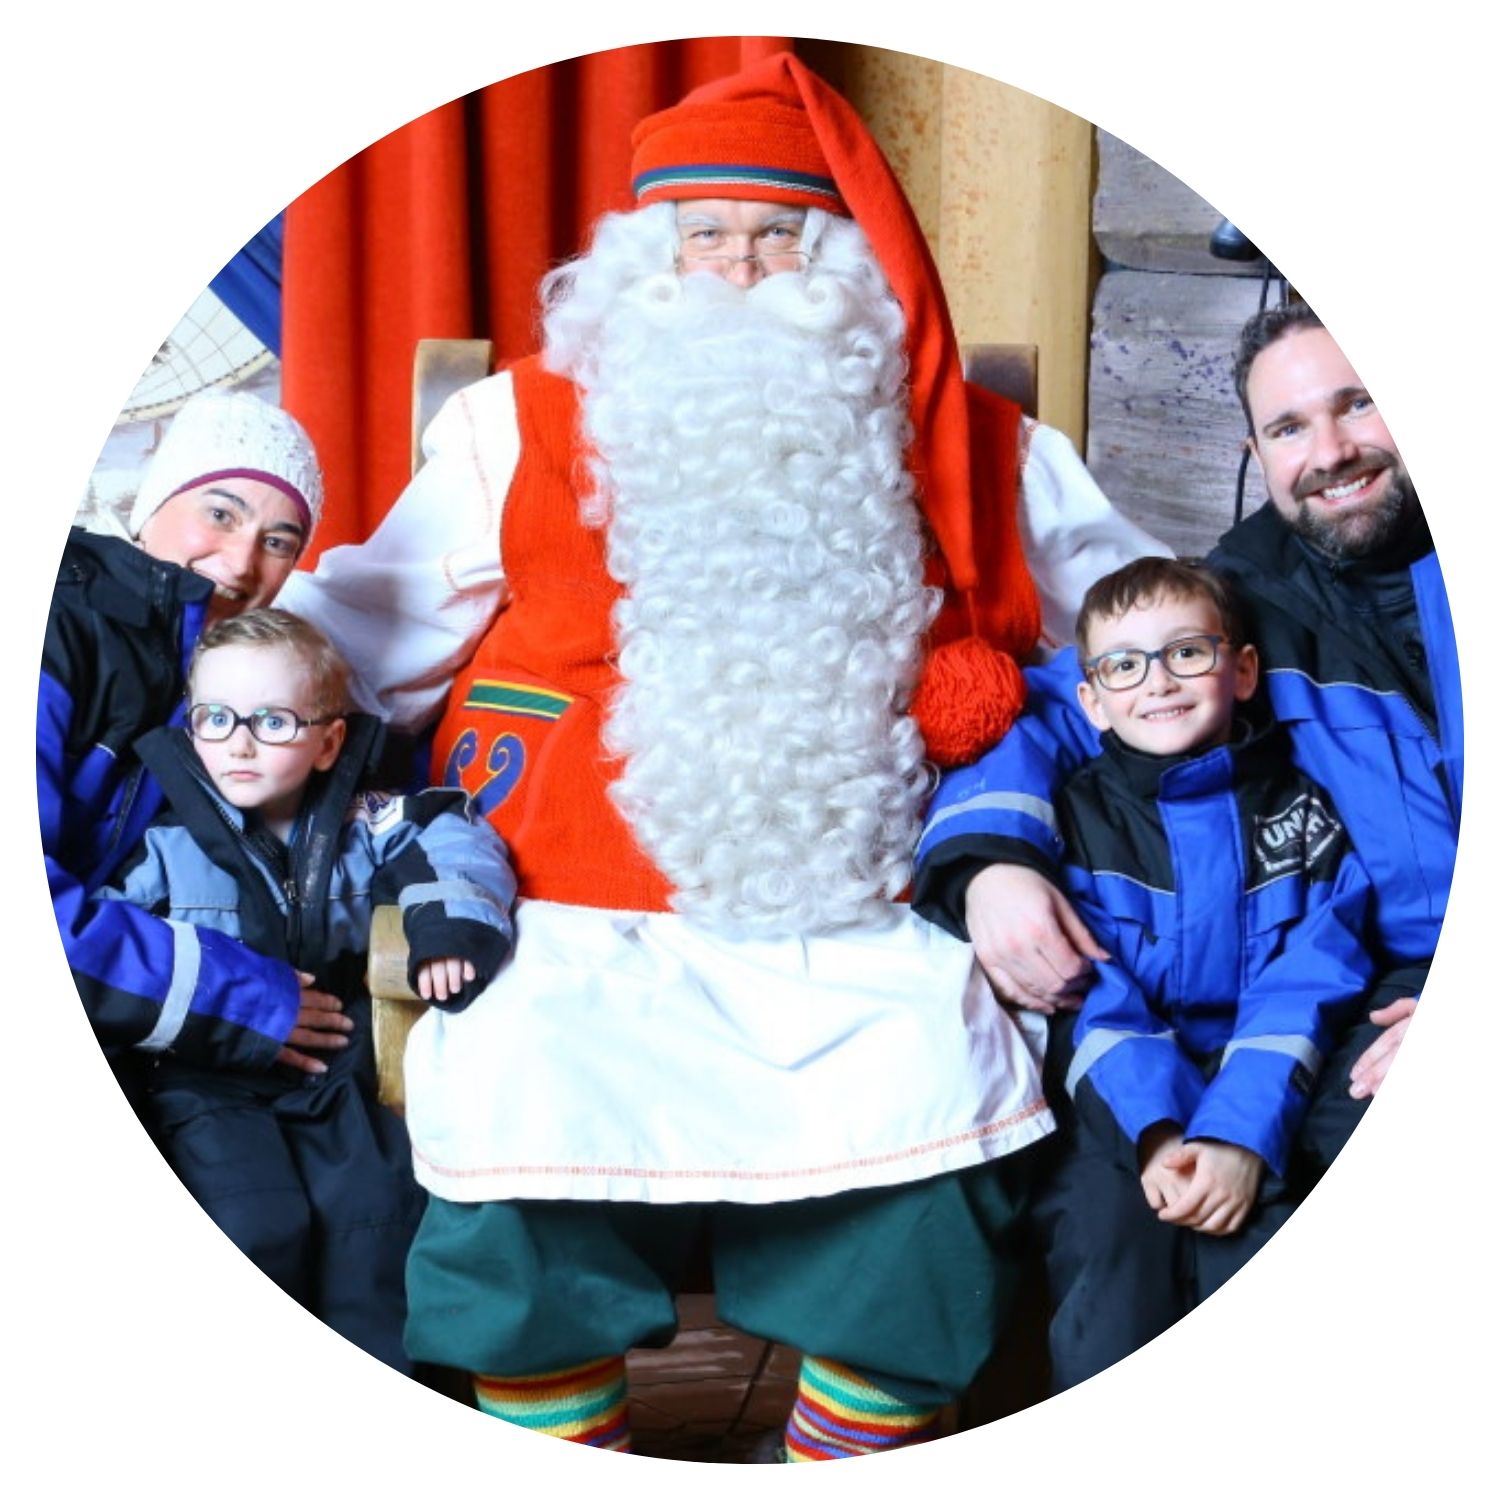 Une famille heureuse prend une photo avec un monsieur déguisé en Père Noël, les petits garçons souriants dans les bras de leurs parents, capturant la magie de Noël en Finlande.